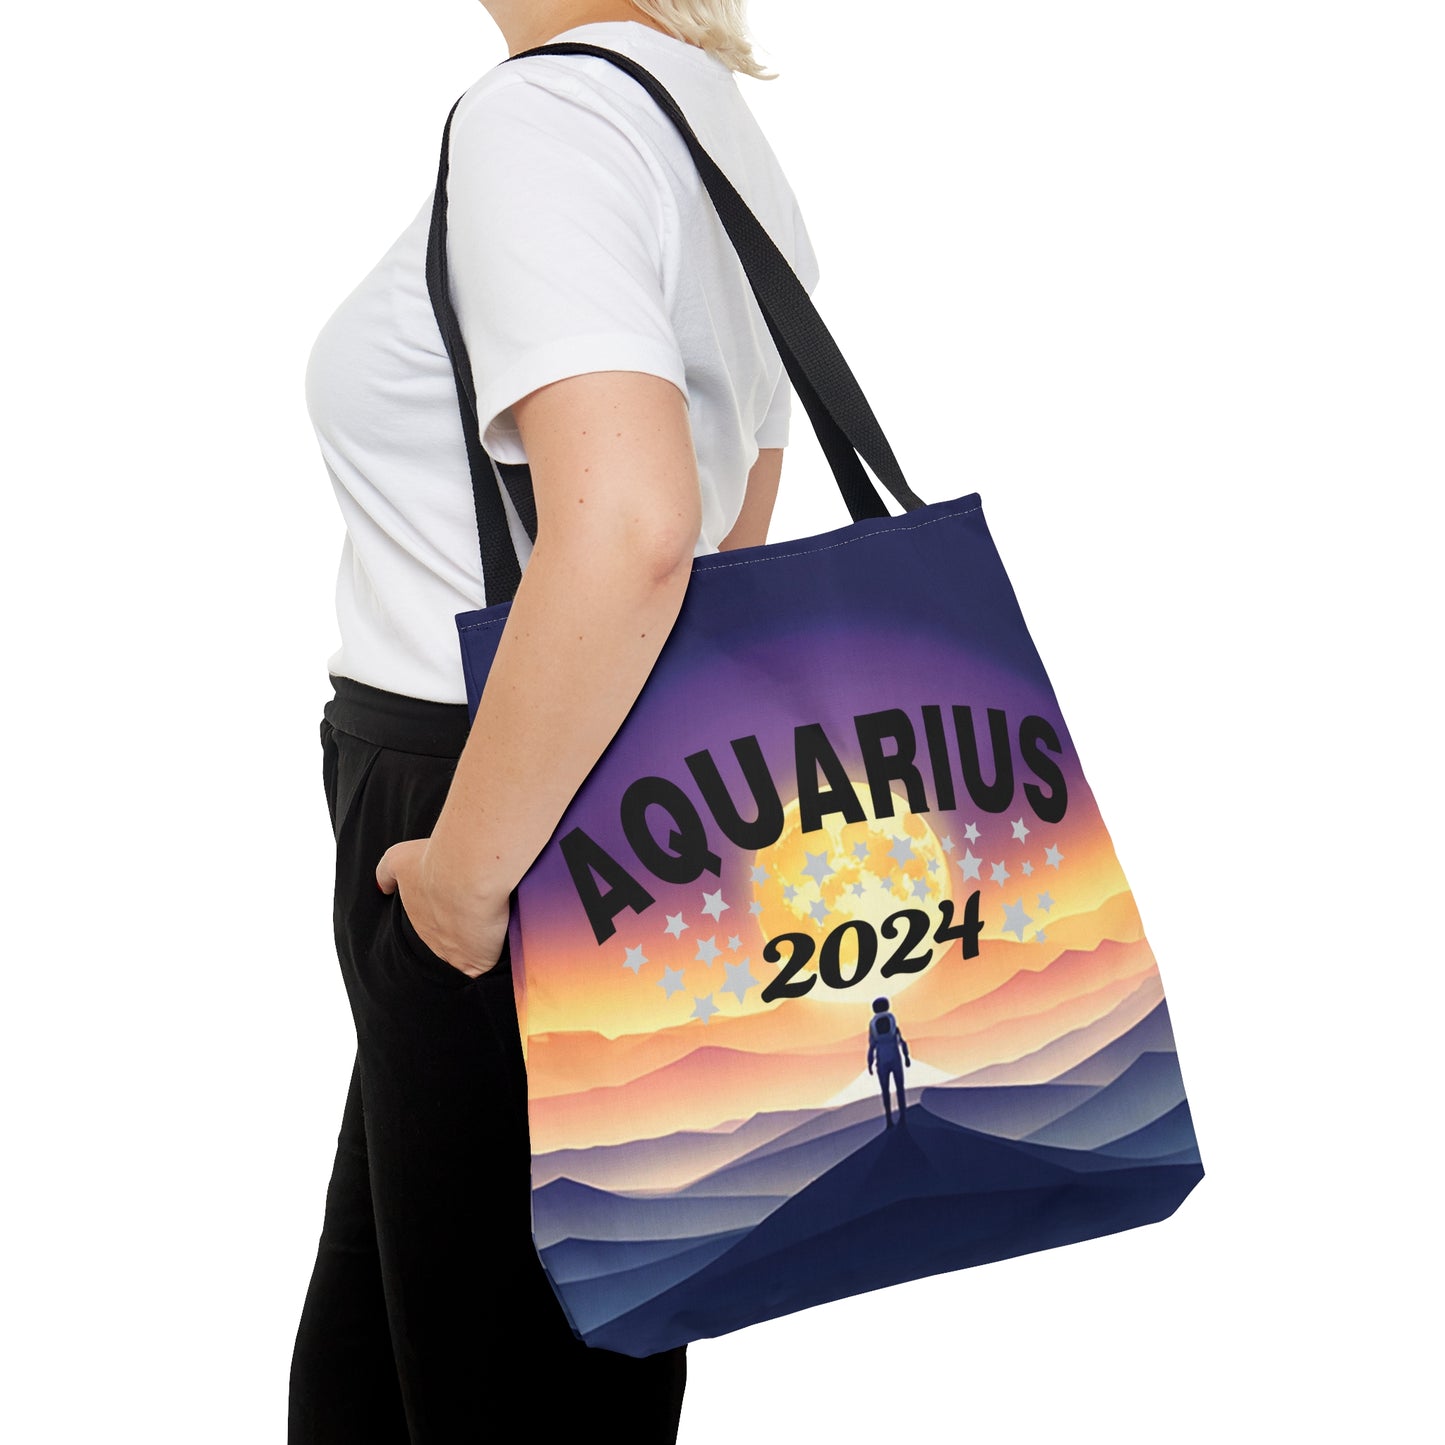 Aquarius 2024 Tote Bag